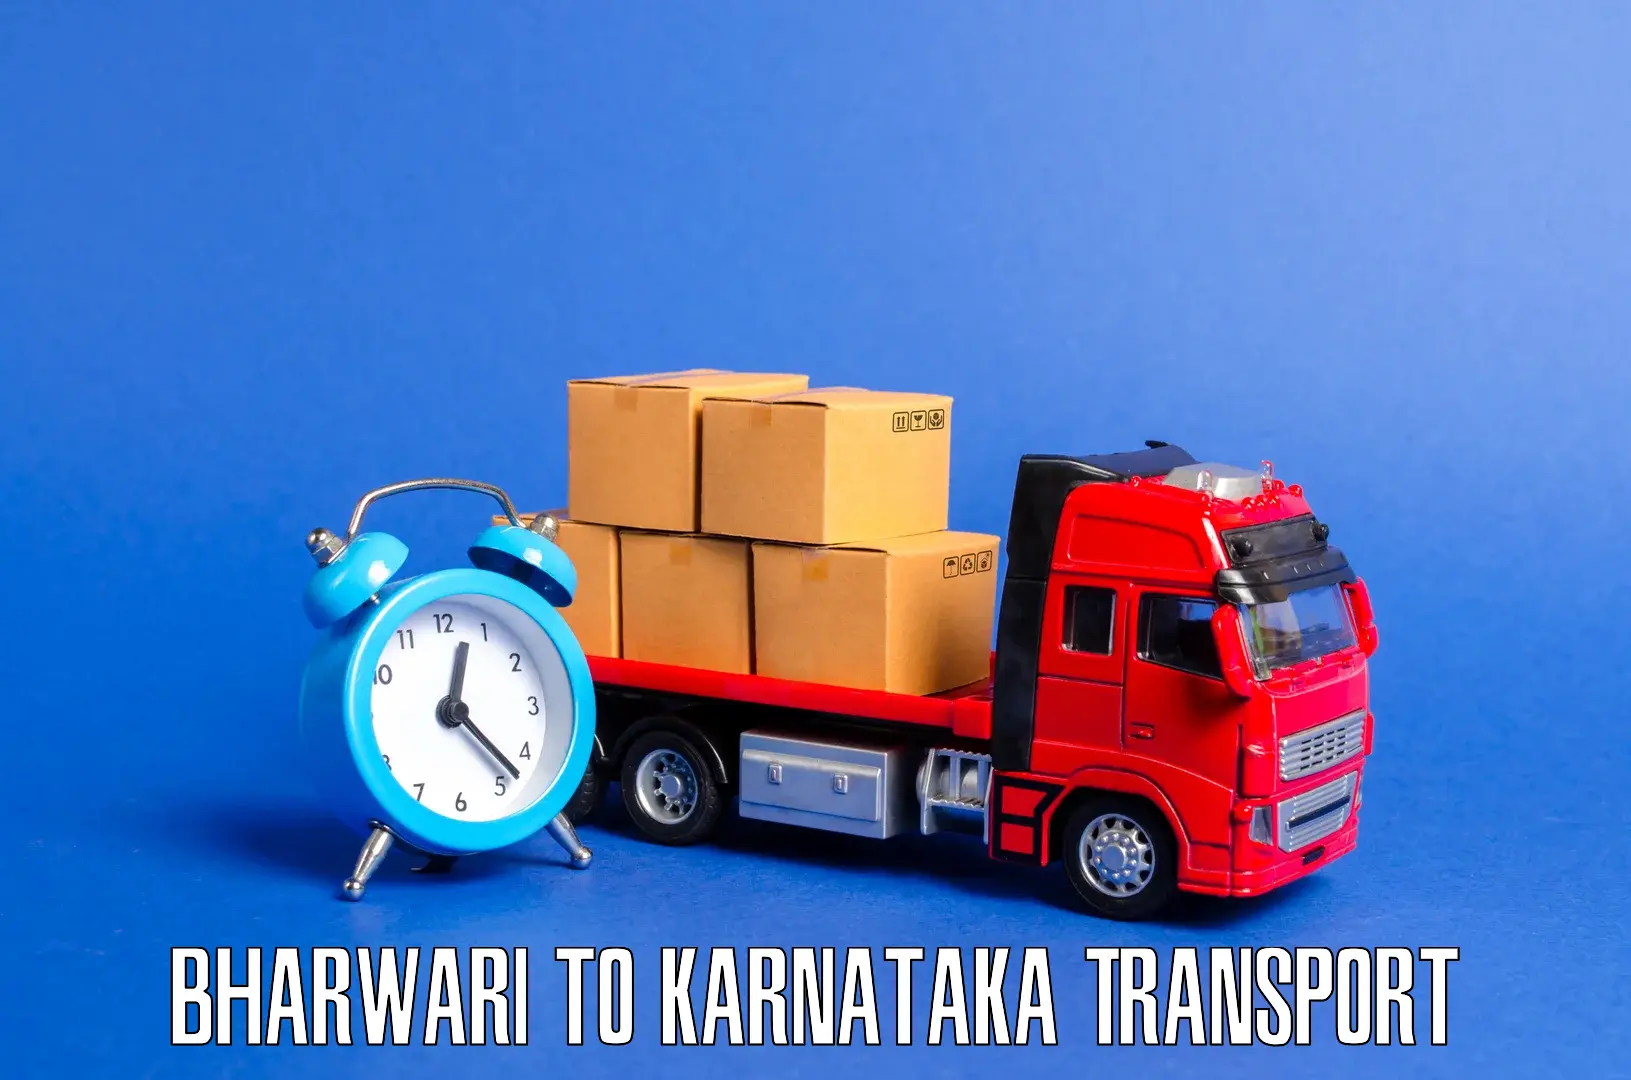 Express transport services Bharwari to Karnataka